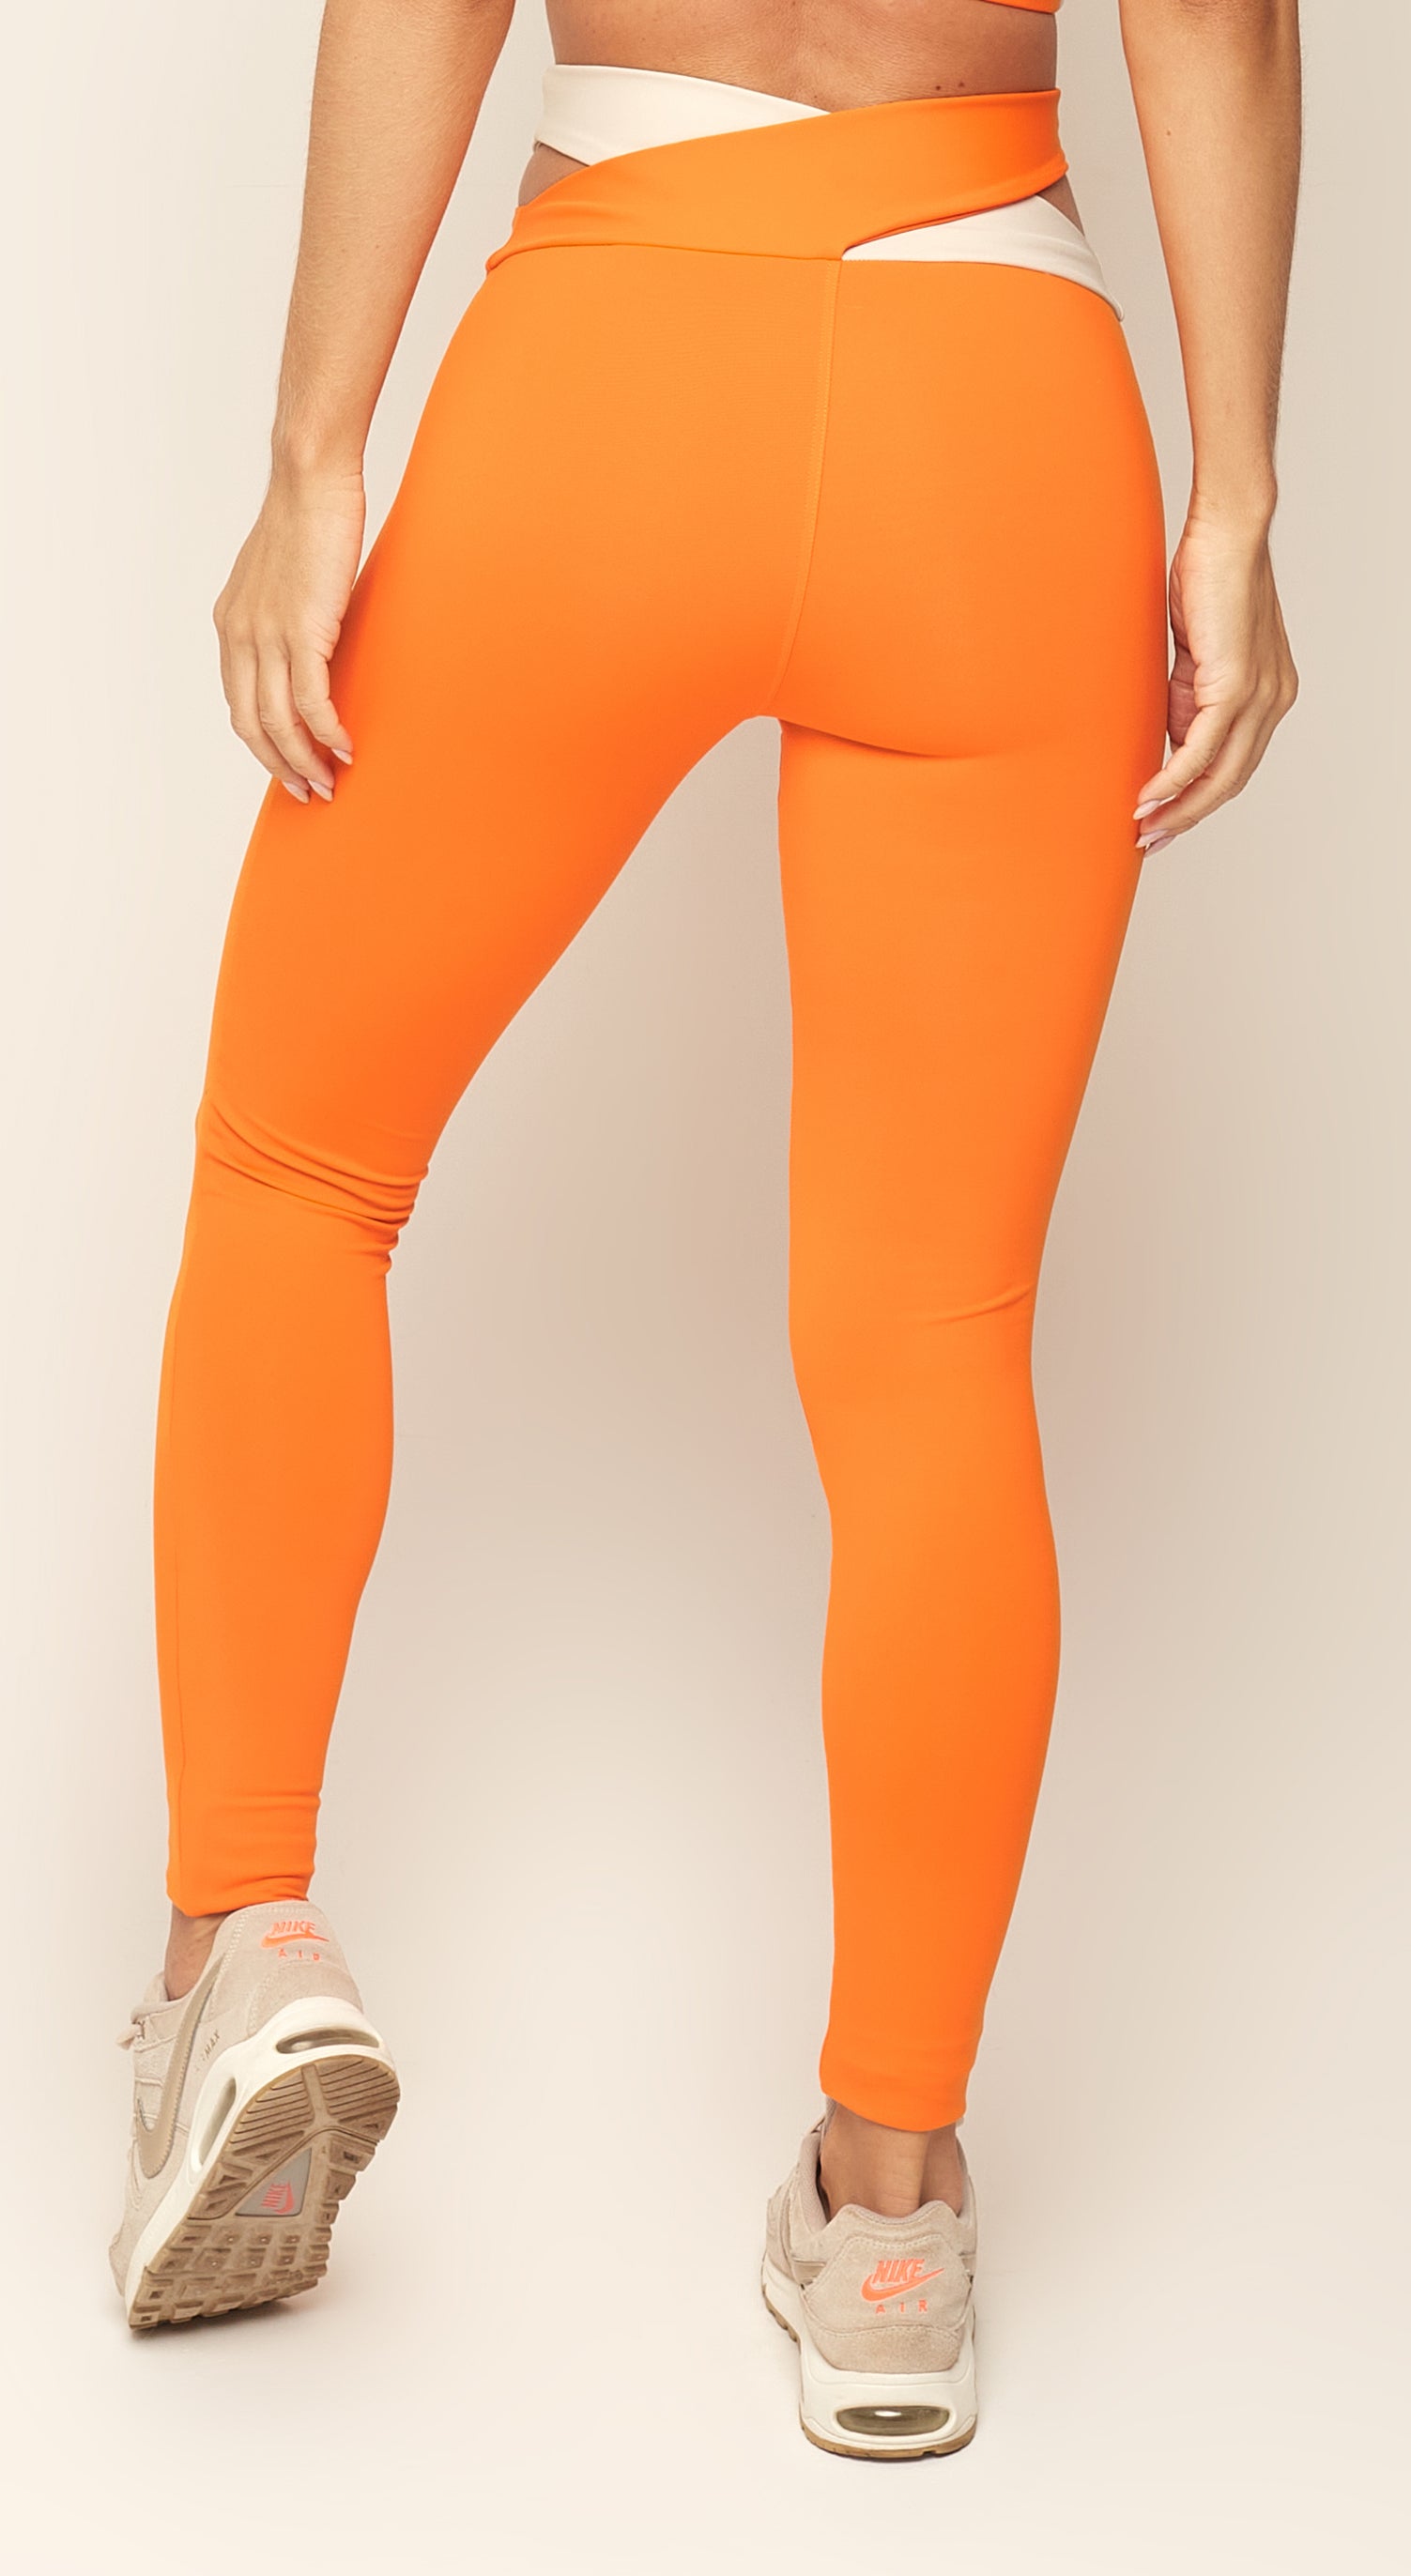 Trendy Legging - Orange